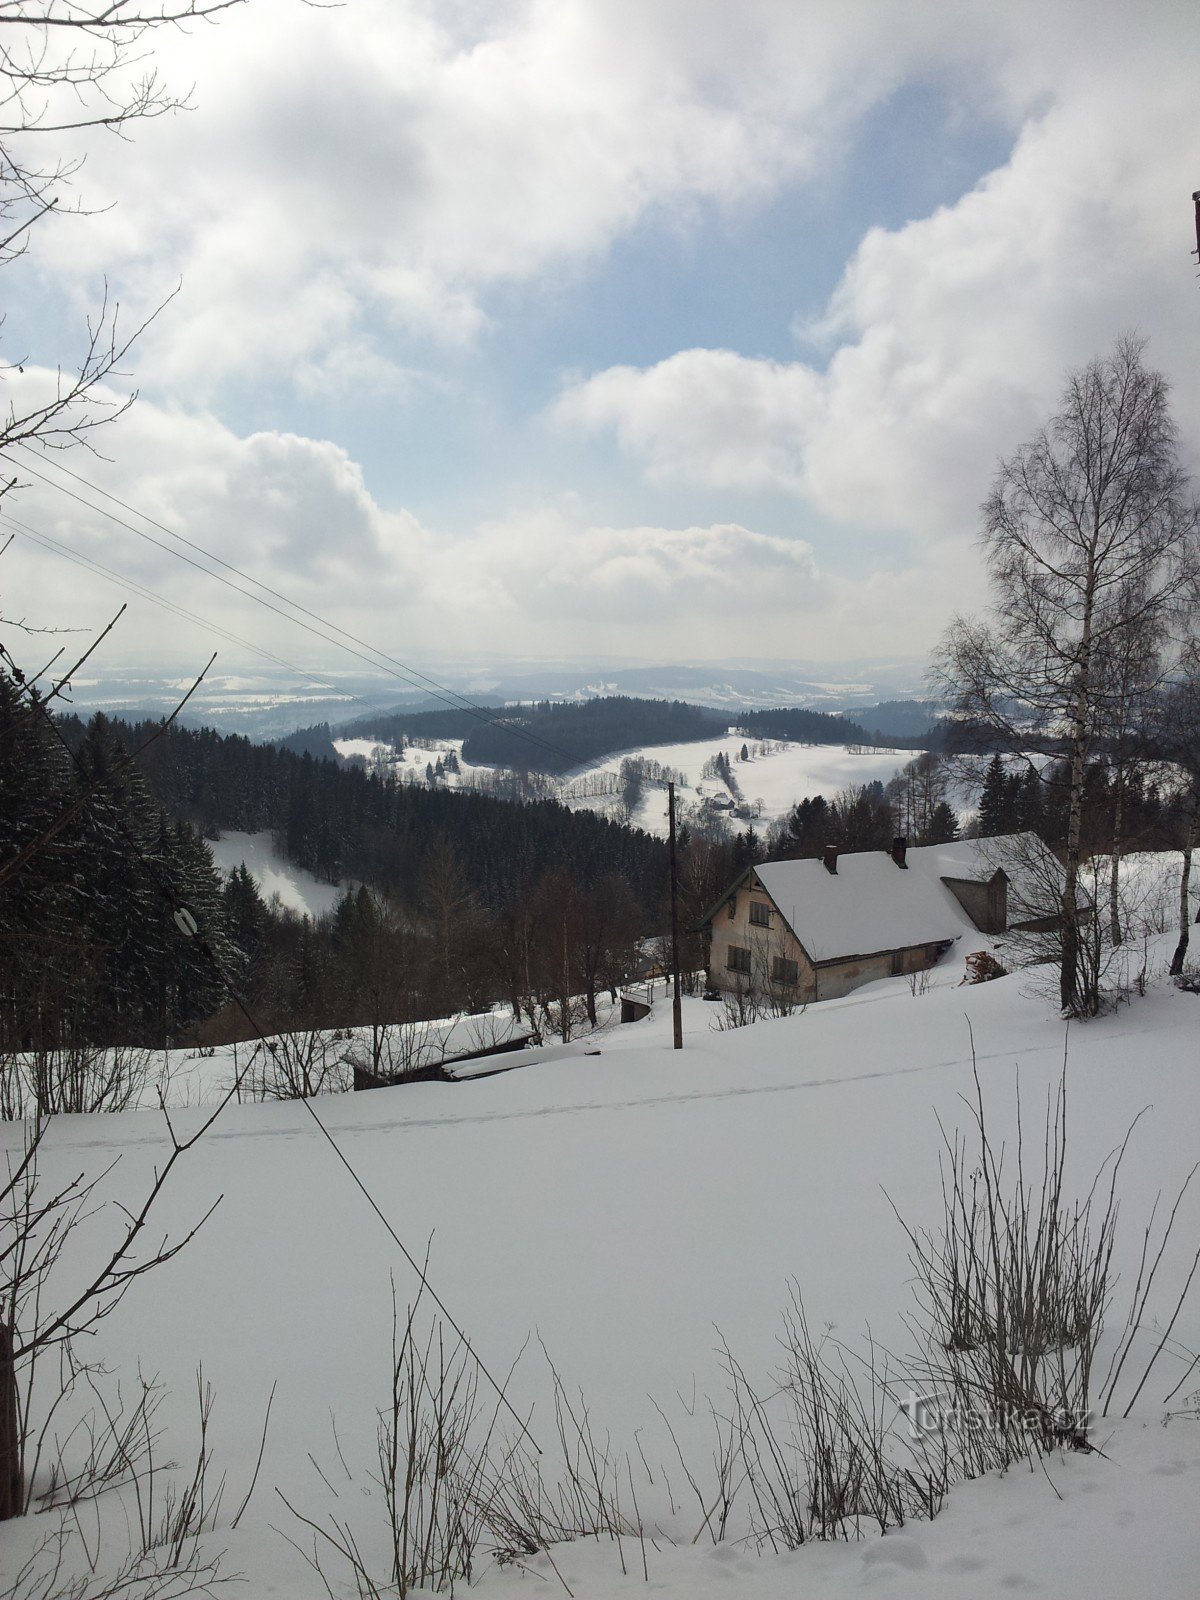 Paseo invernal desde Beneck hasta el mirador de Žalý y vuelta